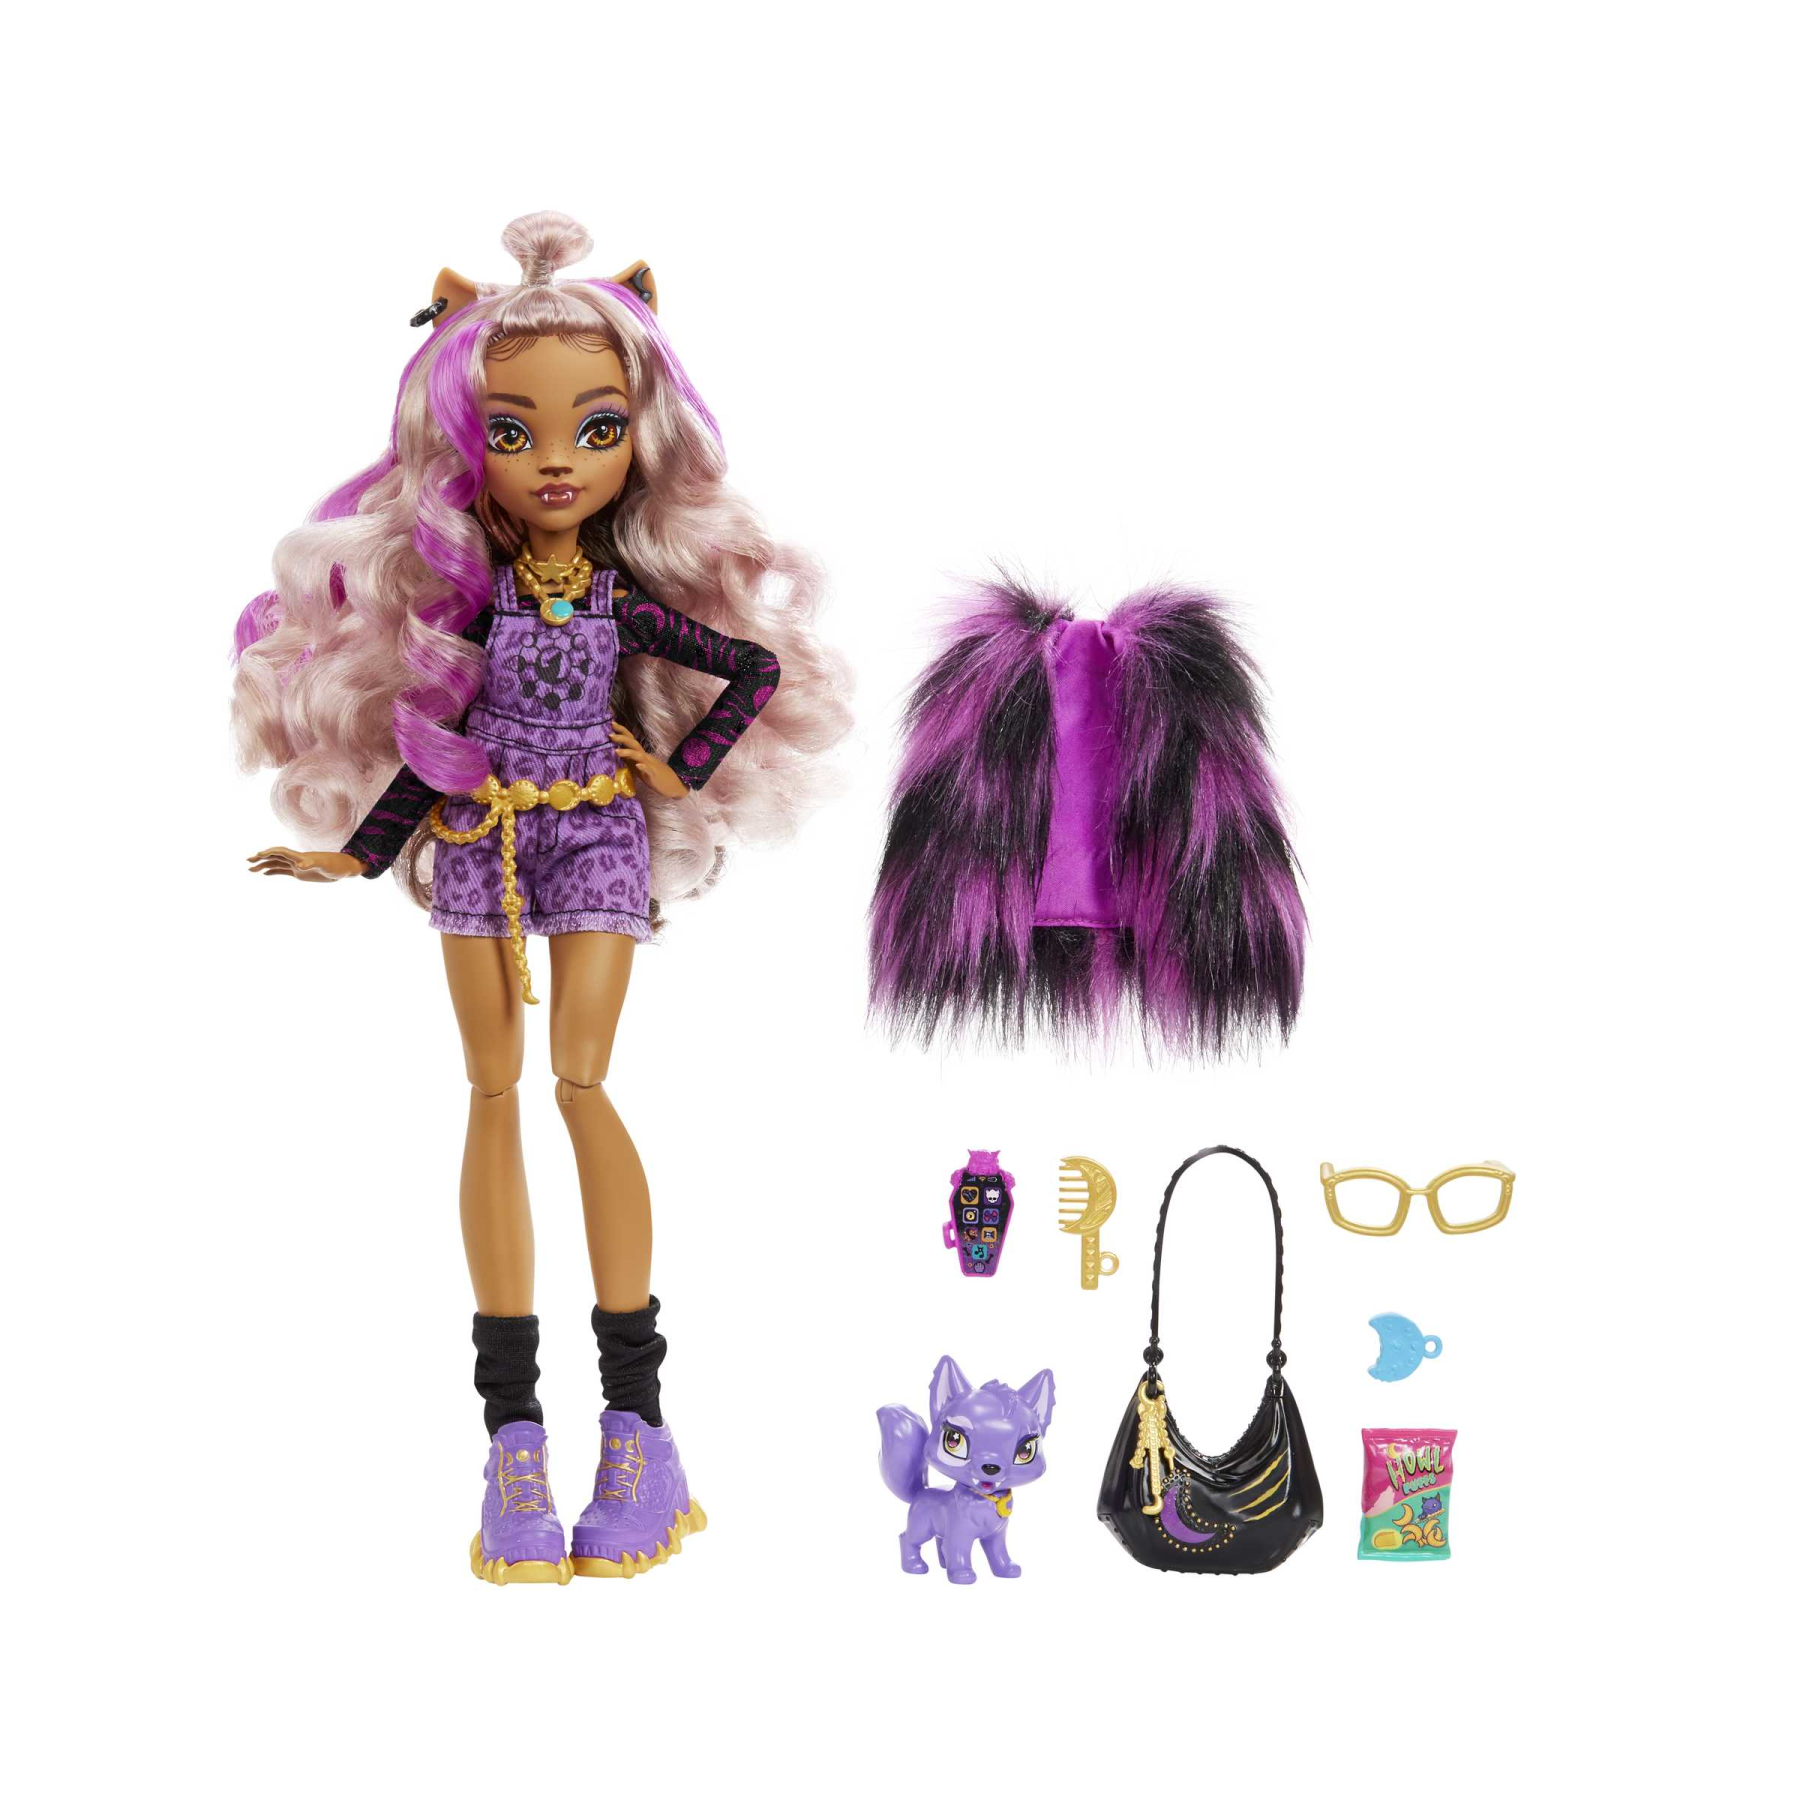 Monster high - clawdeen, bambola con accessori e gattino, snodata e alla  moda con capelli con ciocche viola, giocattolo per bambini, 4+ anni, hhk52  - Toys Center